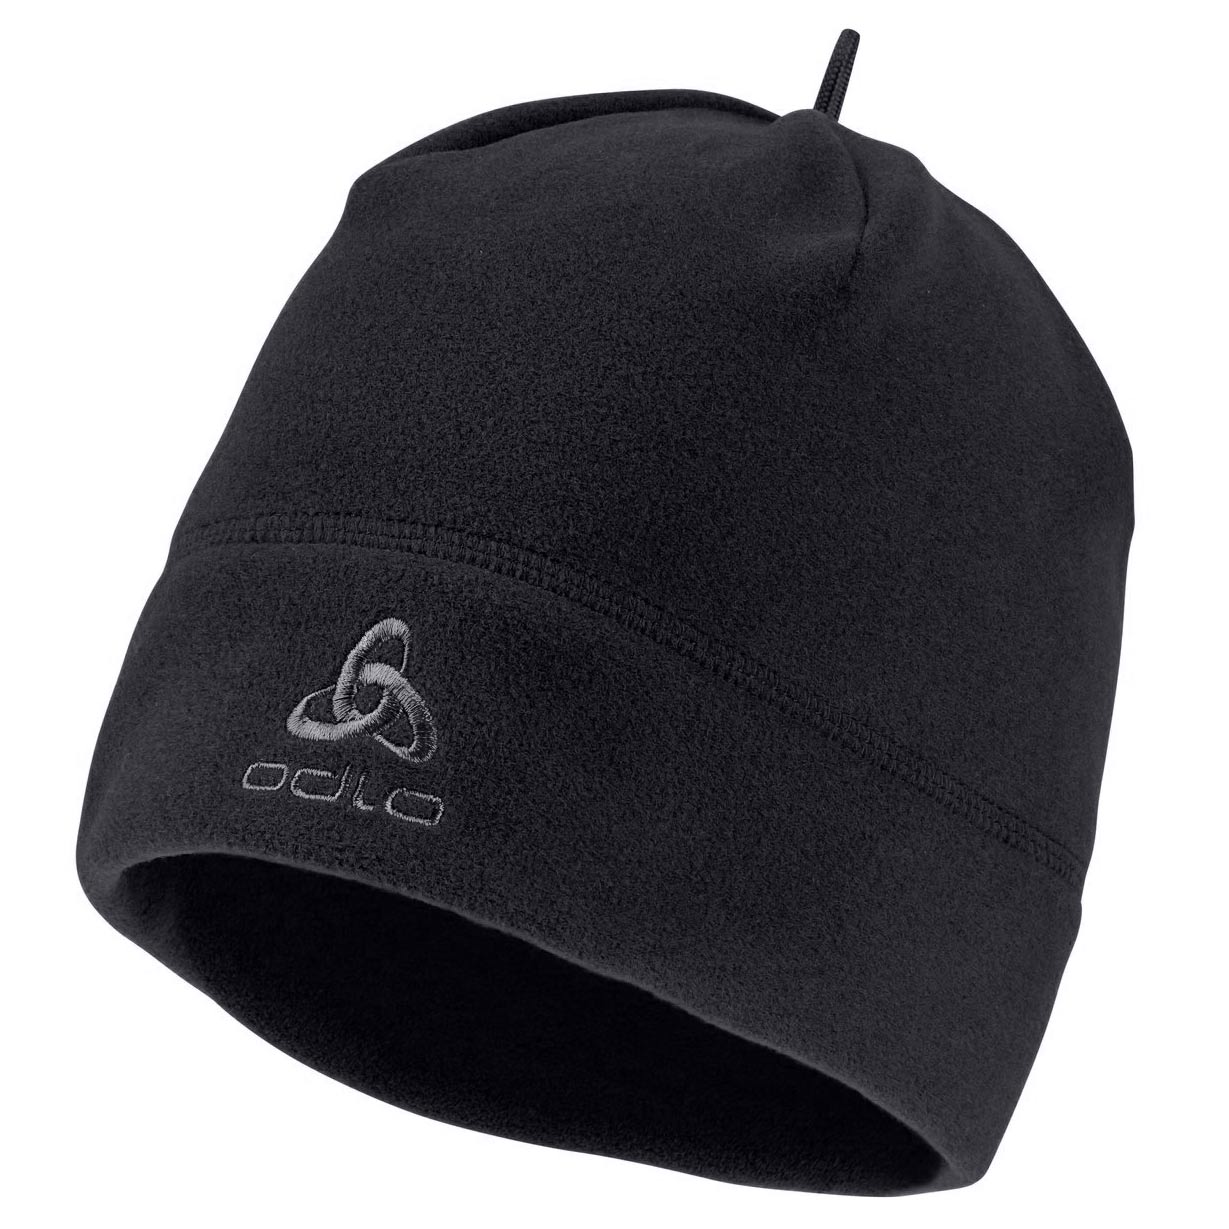 Produktbild von Odlo Microfleece Warm ECO Mütze - schwarz